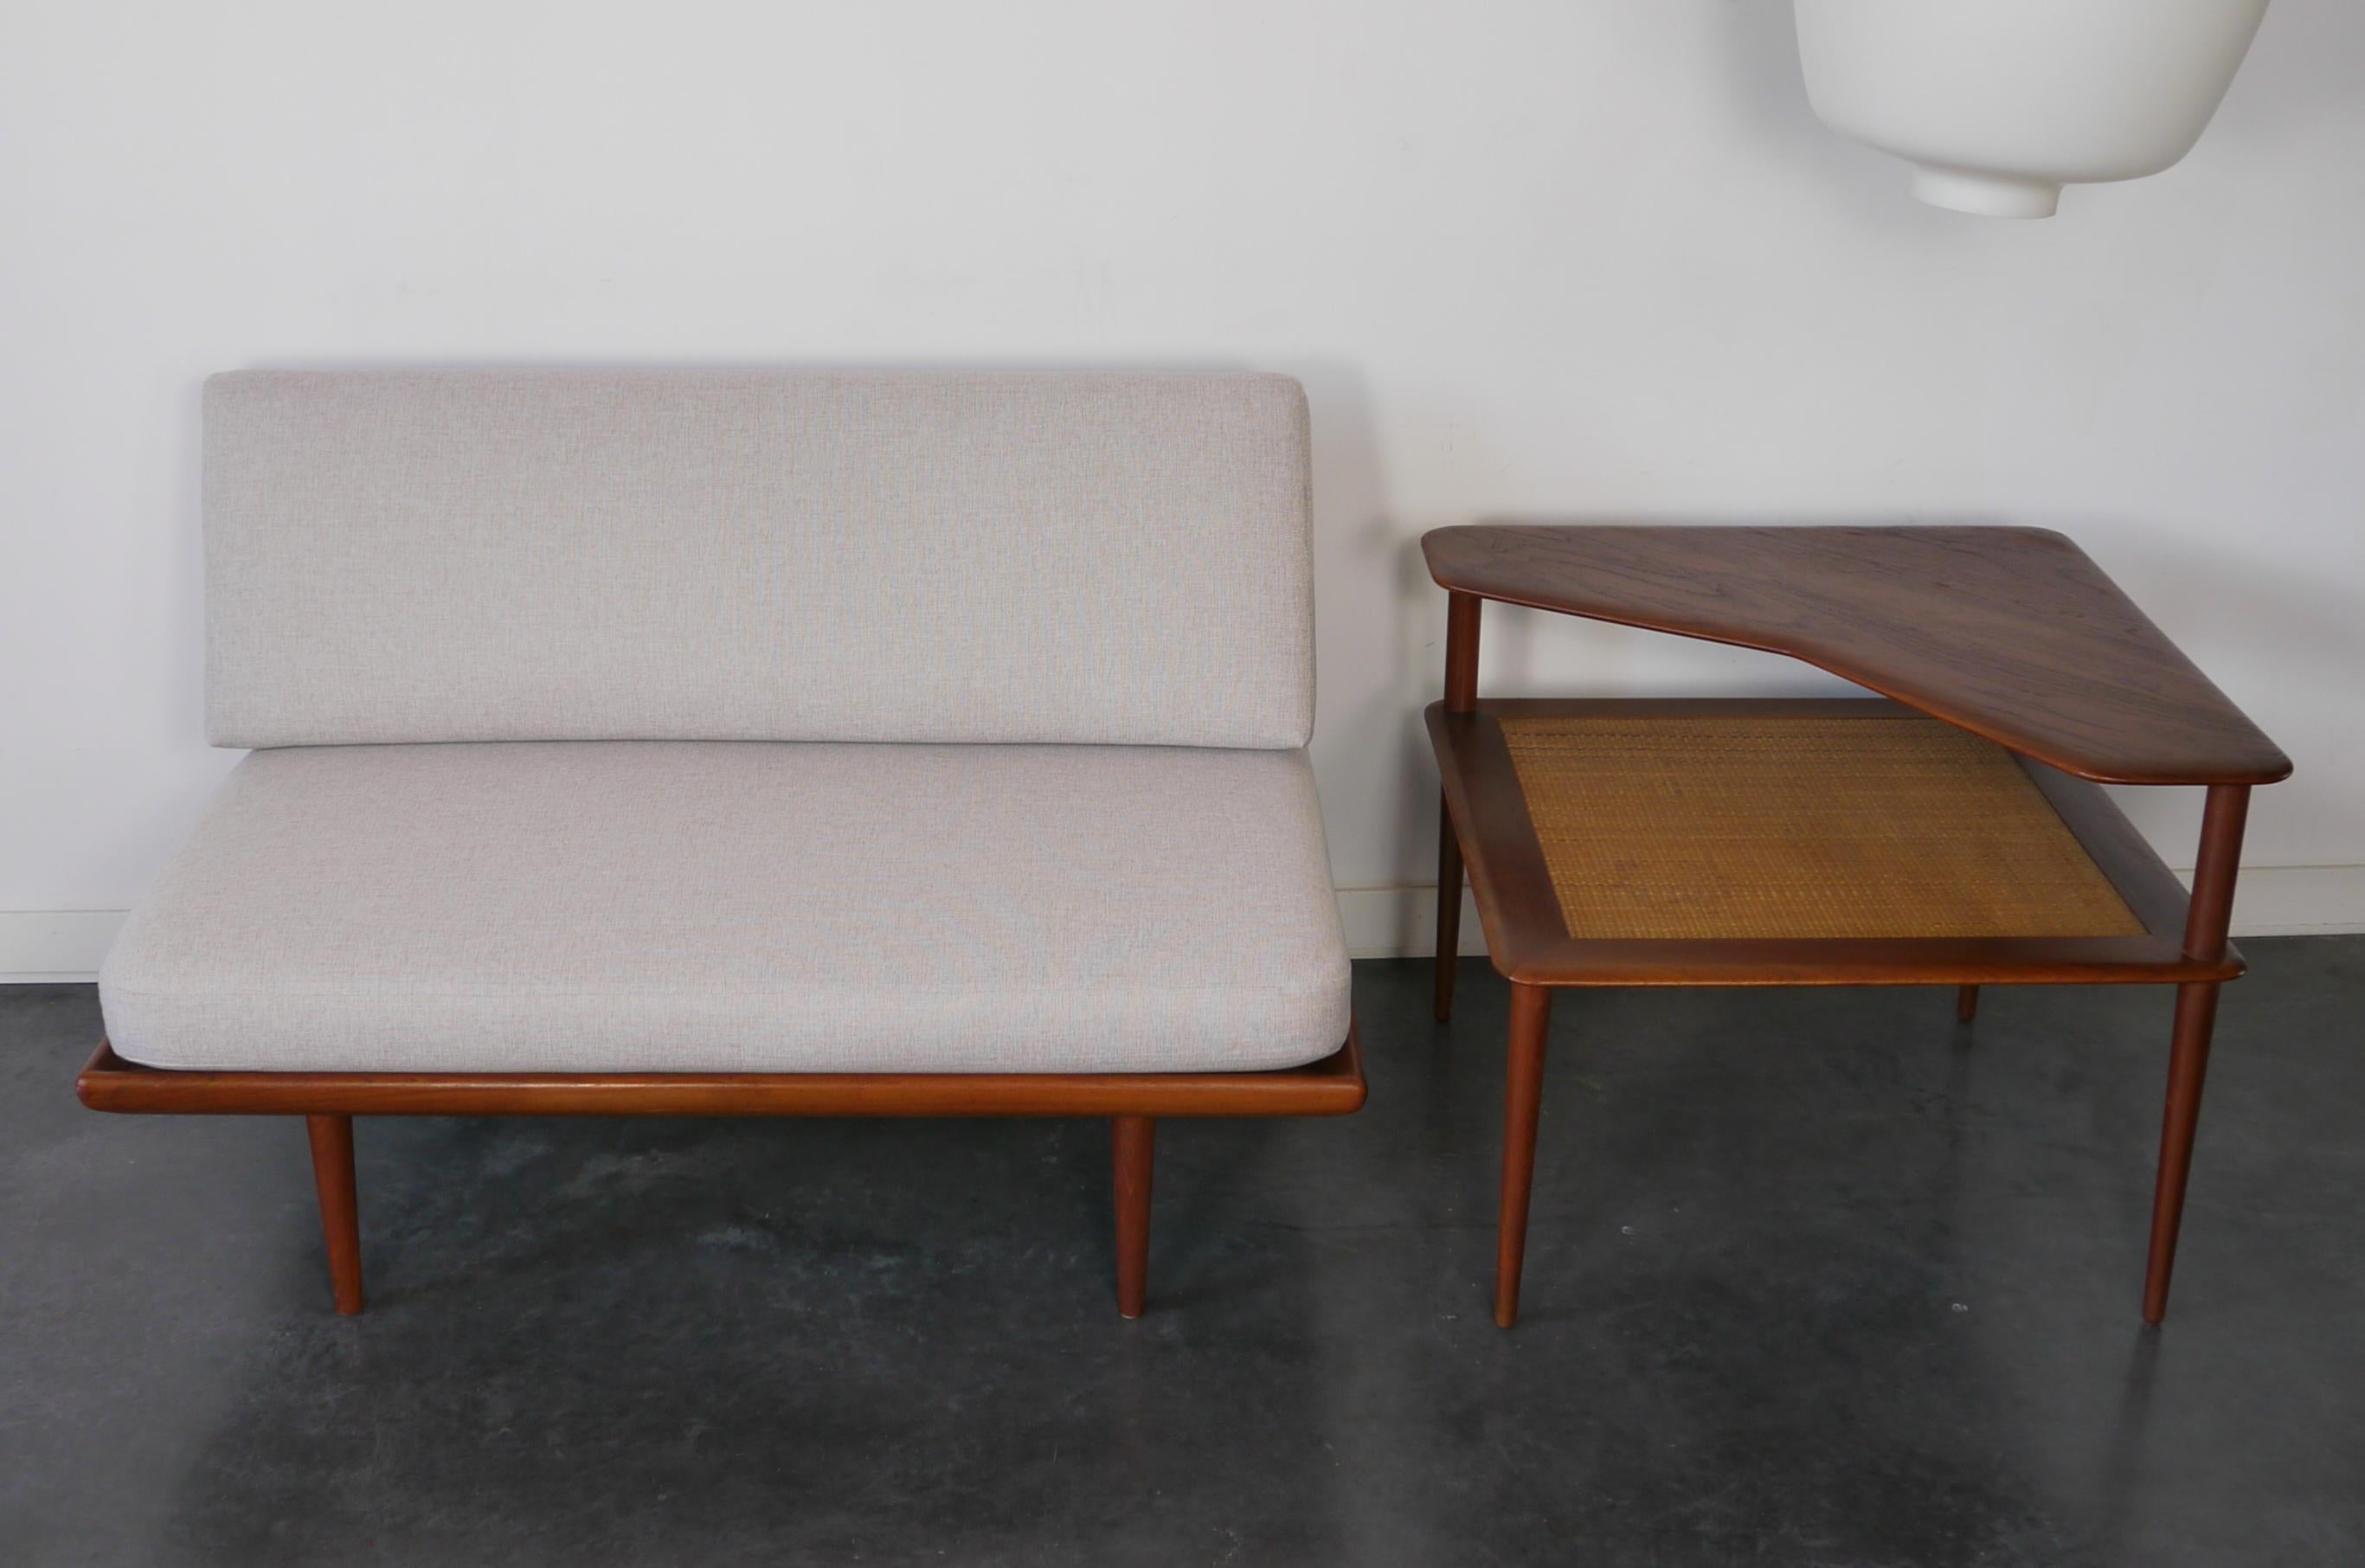 Ein klassisches 2-Sitzer-Sofa und Daybed, entworfen von den dänischen Architekten Peter Hvidt & Orla Mølgaard Nielsen. Produziert in Dänemark von France & Daverkosen in den 1950er Jahren.
Dieses Modell FD 418a verfügt über ein Holzgestell aus